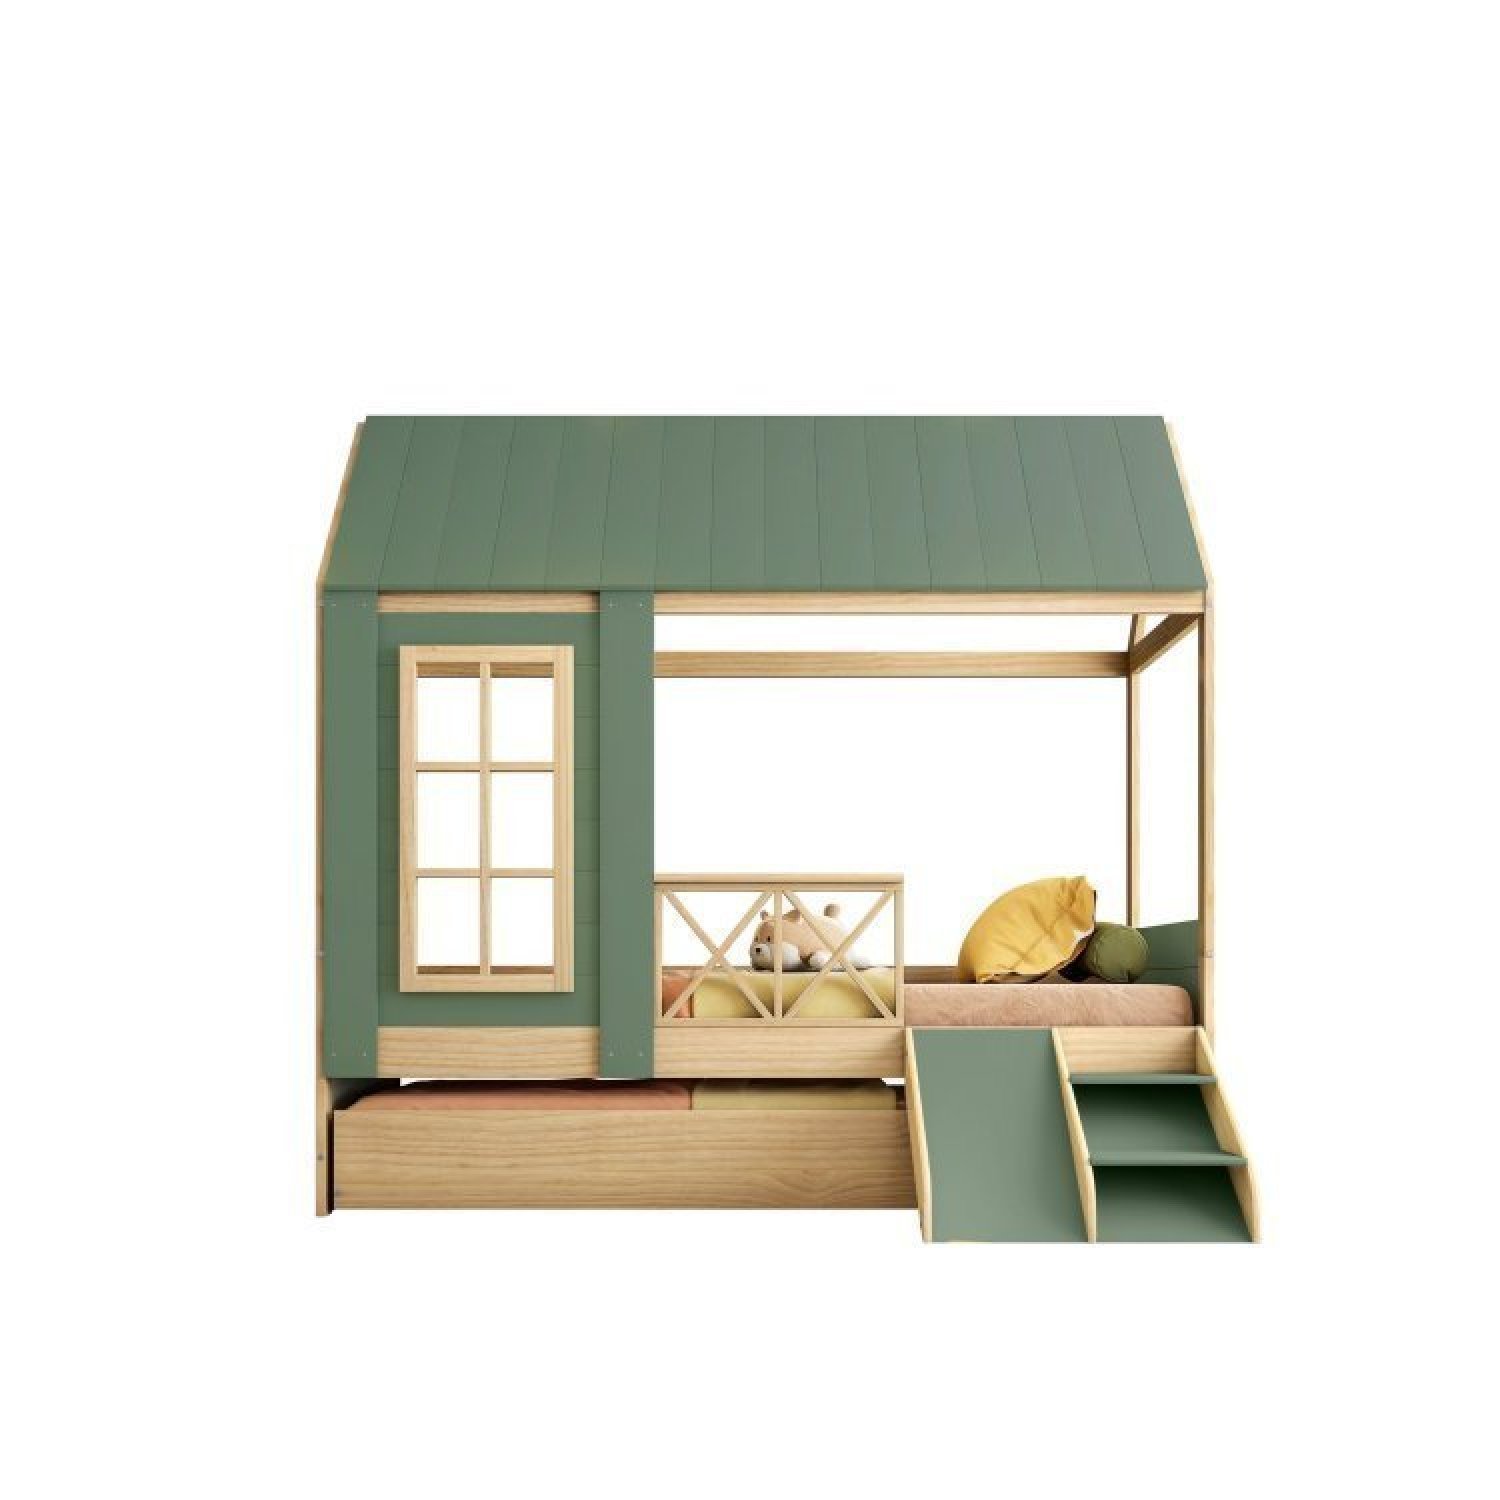 Bicama Solteiro Infantil Reversível Telhado Completo Casinha Garden Casatema - 5